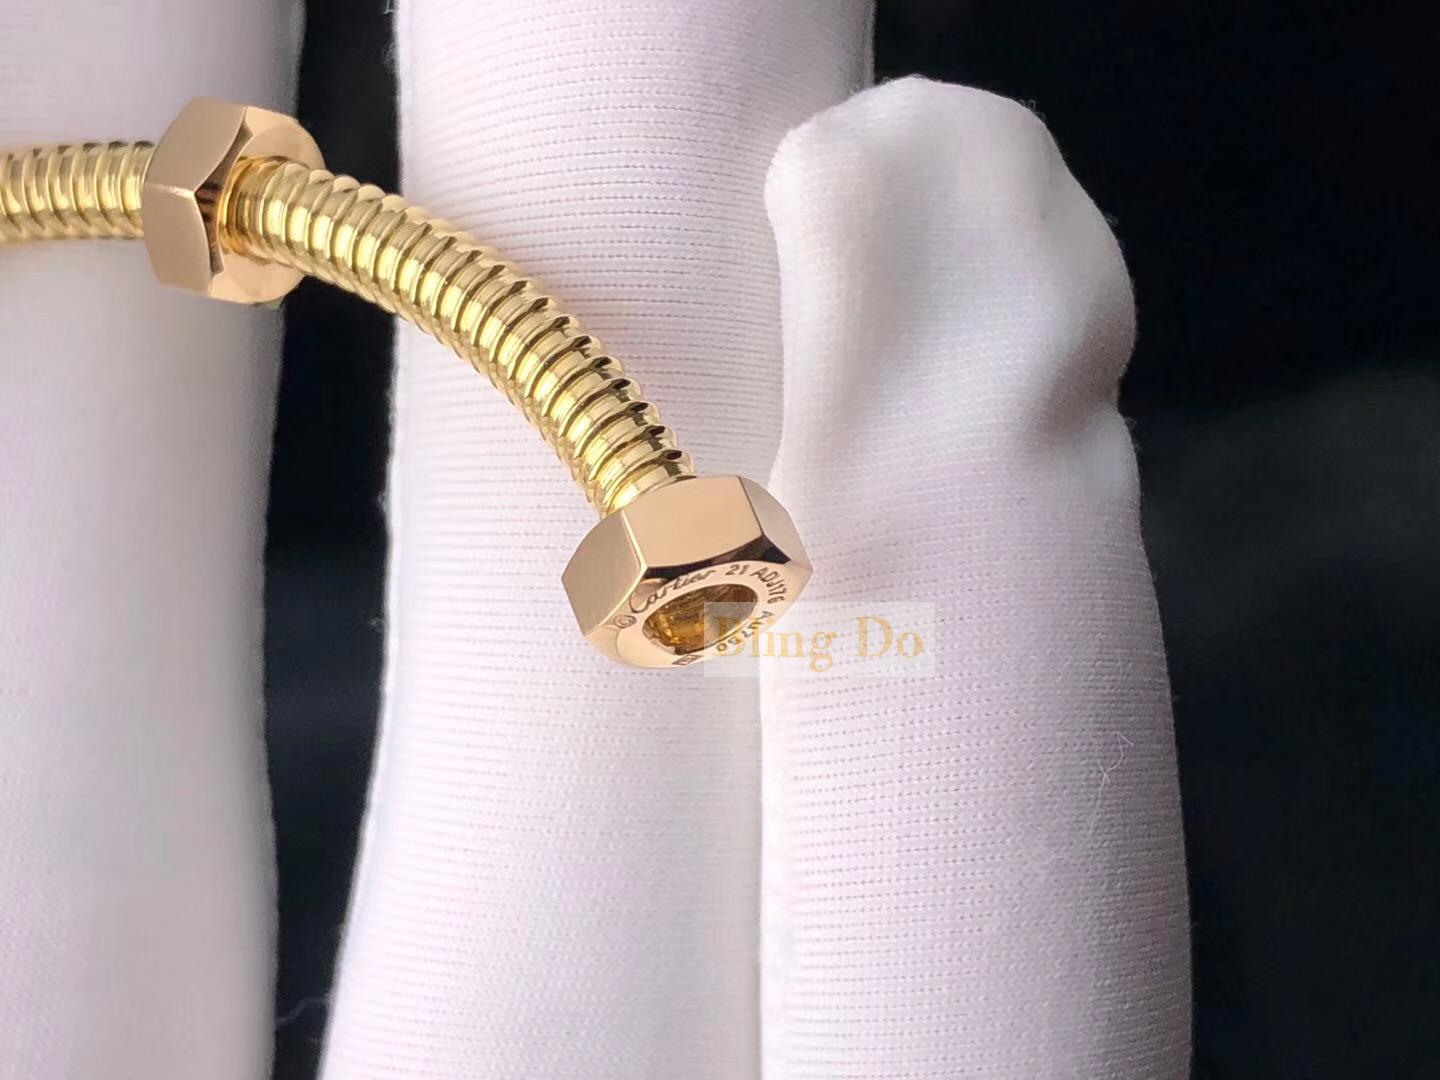 CRB6049517 - Ecrou de Cartier bracelet - Rose gold - Cartier